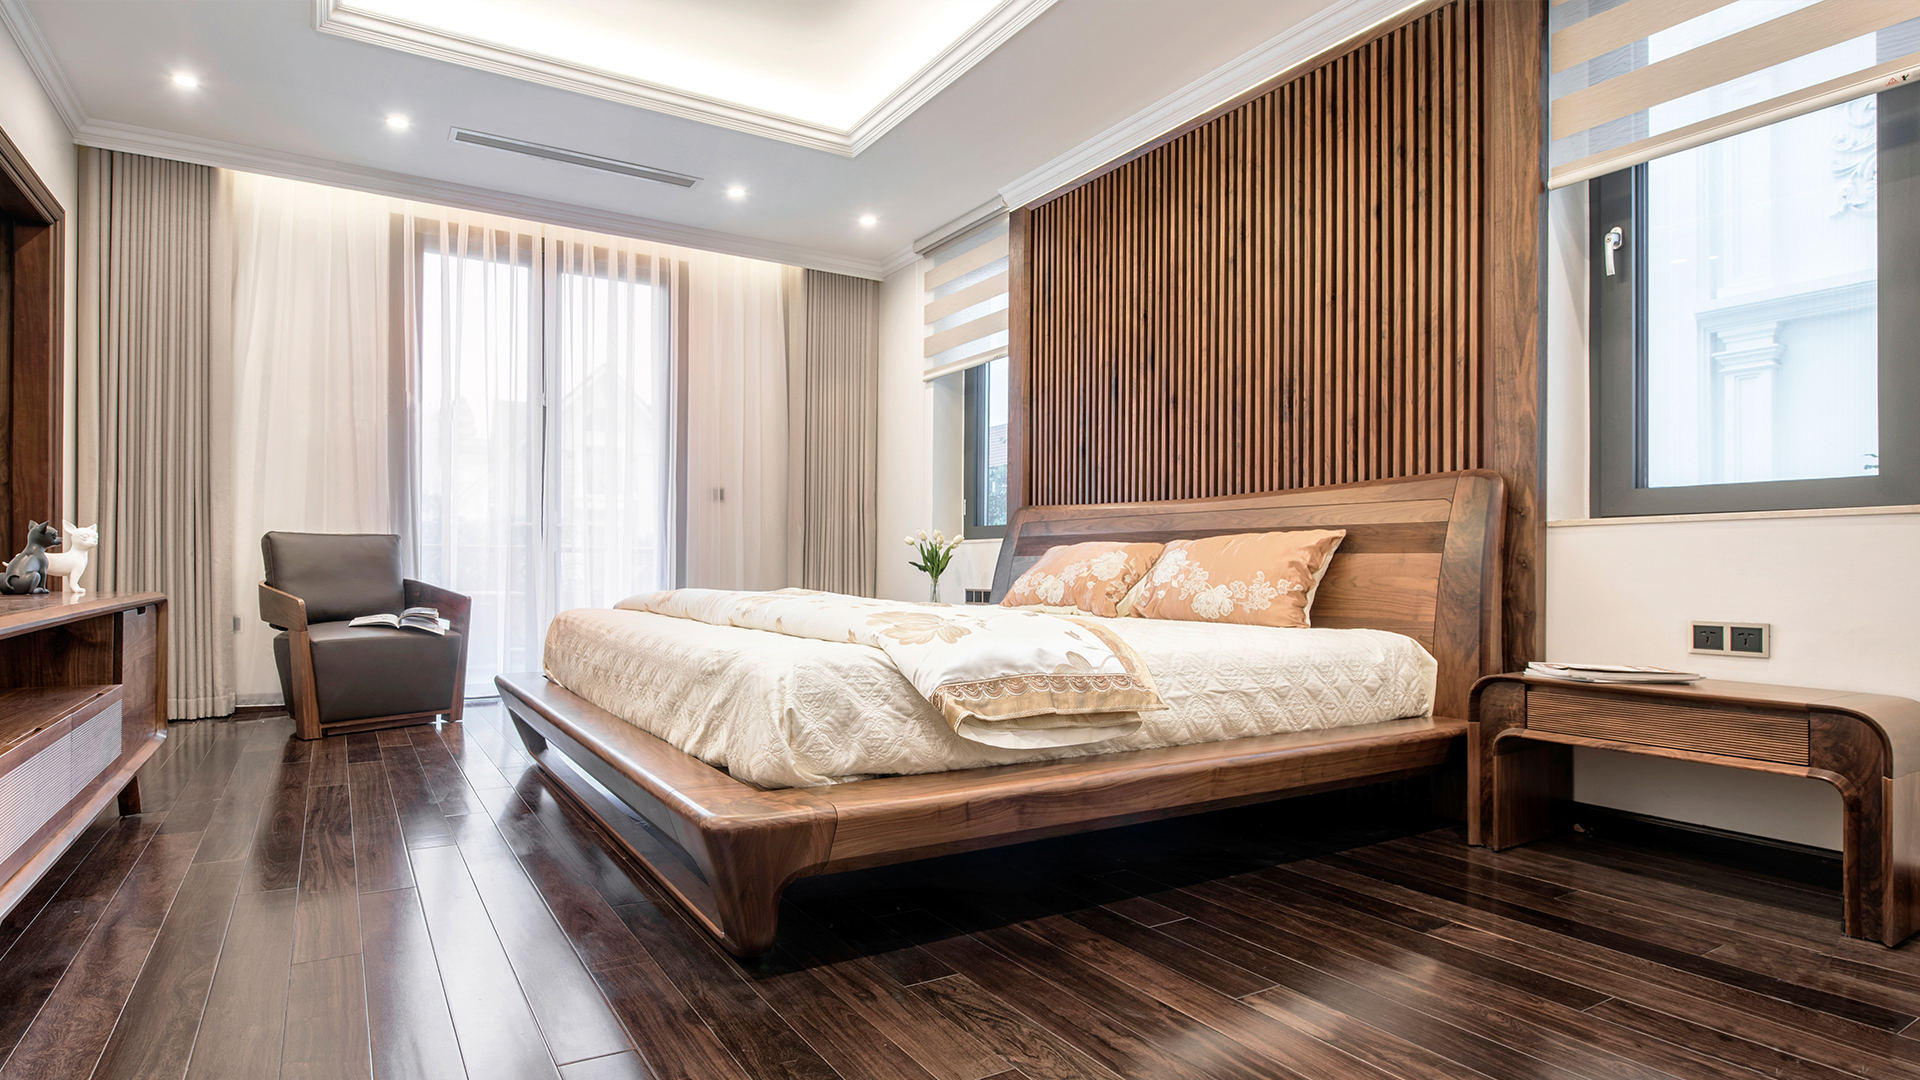 Giường gỗ cao cấp 2024 mang đến cho bạn sự thoải mái tối đa khi nghỉ ngơi. Với chất lượng gỗ tuyệt vời và thiết kế đẹp mắt, giường giúp bạn cảm thấy thư giãn hơn sau những giờ làm việc căng thẳng. Hãy cùng thư giãn và ngủ ngon trên giường gỗ cao cấp này.